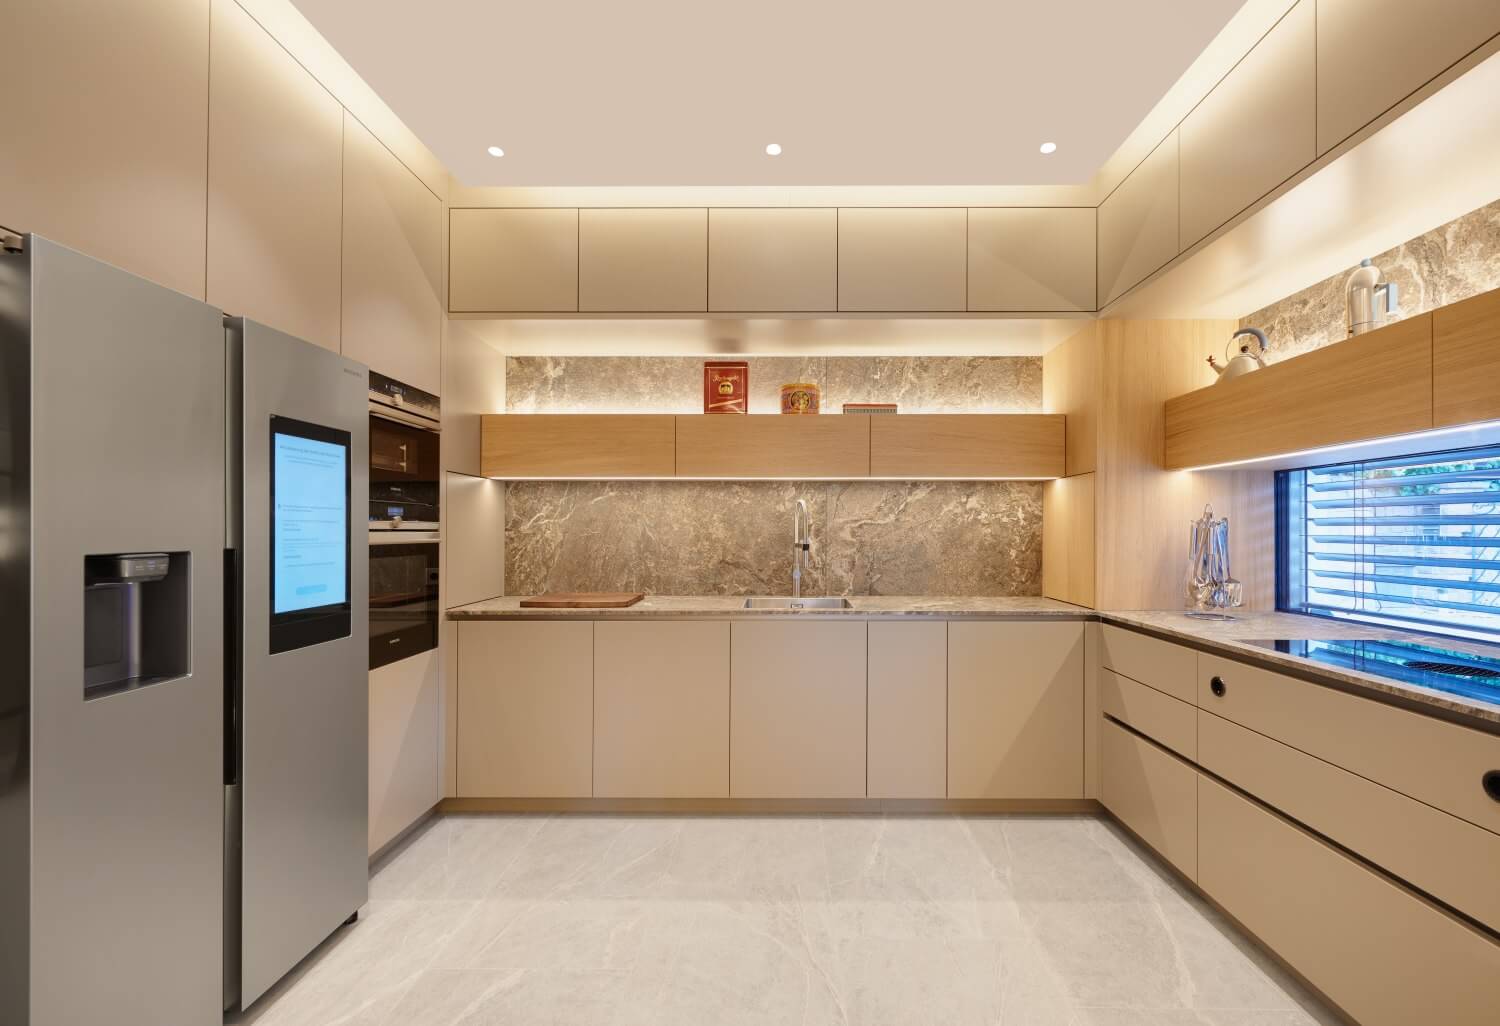 Küche beleuchtet mit indirekten Lichtquellen, LEDs für die Arbeitsflächen und Georg Bechter Dot Power mit Intro Einsatz als direktes Licht.